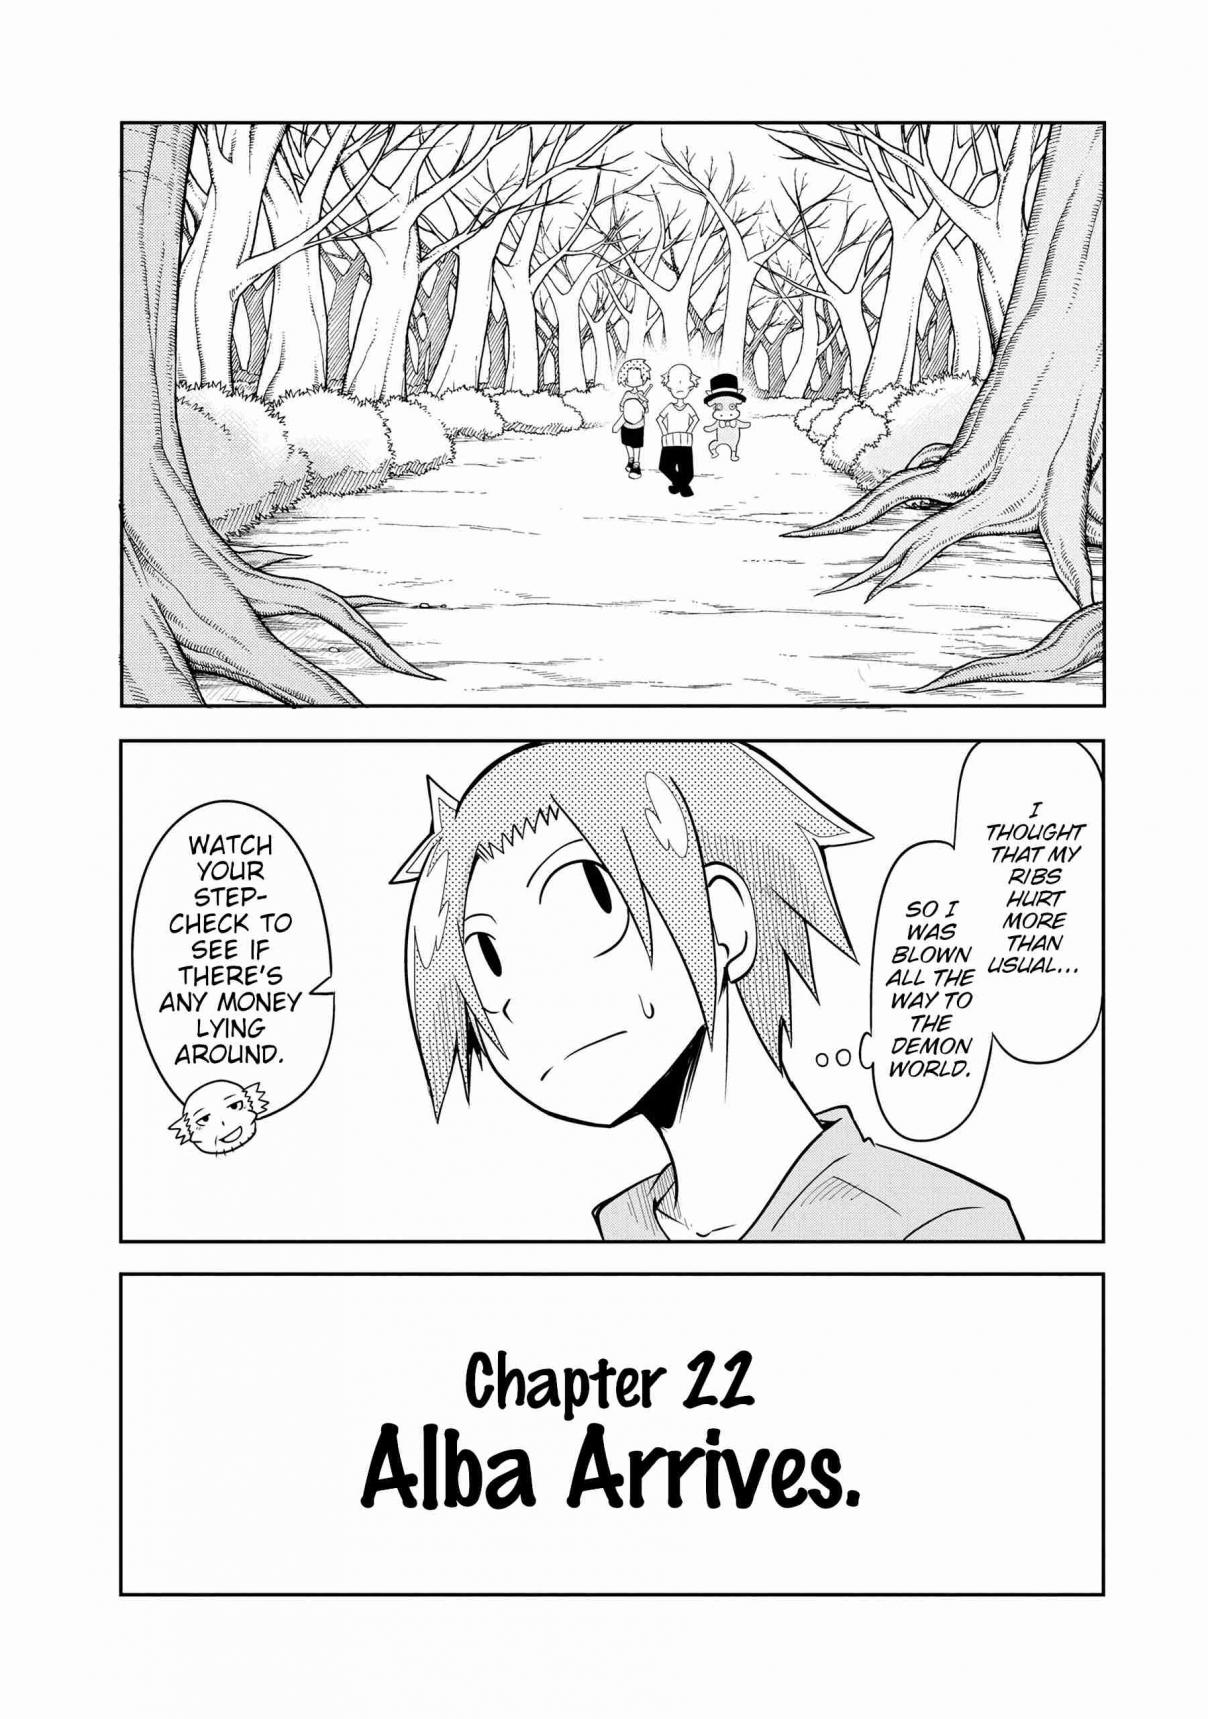 Senyuu. Main Quest Part 2 Vol. 2 Ch. 22 Alba Arrives